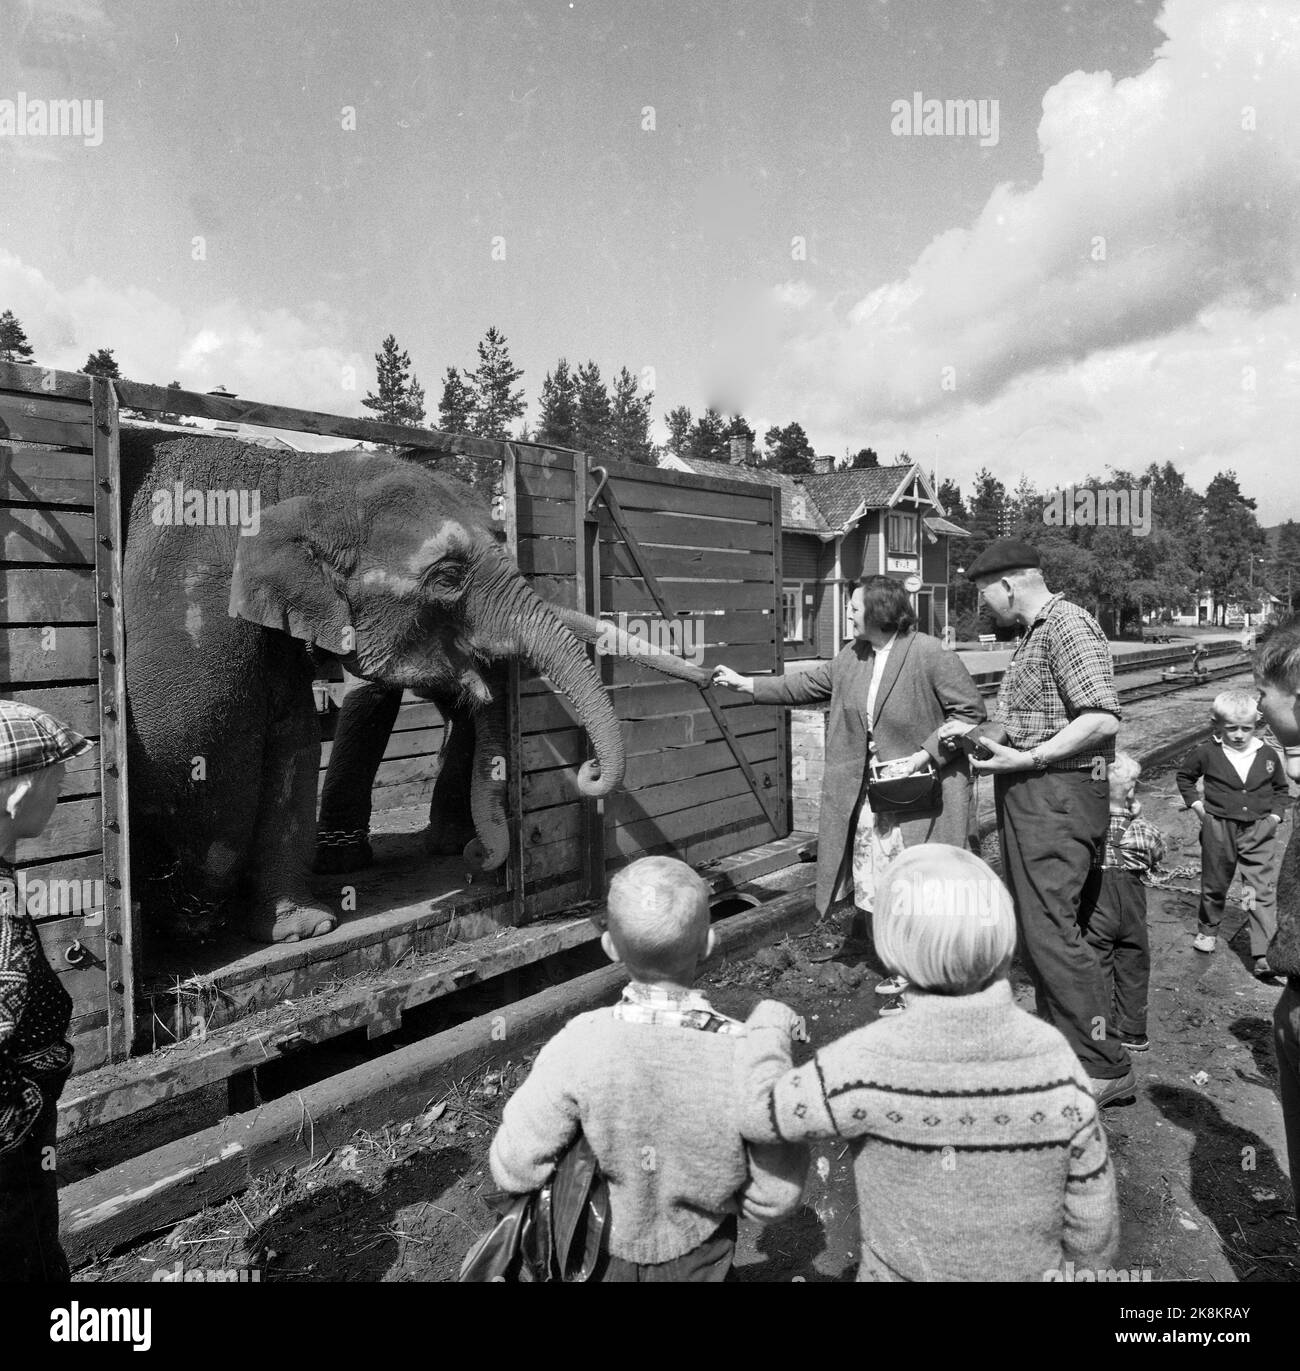 Sørlandet, sommeren 1962. Da elefantene kom til Evje: fire døgns slit for åtte minutters opptreden. Sirkus Arnardo er på turne på Sørlandet med fem to-tonns elefanter. Det byr på problemer. De sto i jernbanevogner i ett døgn på Marnardal stasjon fordi det ikke fantes biler som kunne ta dem videre. Dagen etter reiste de videre til Grovane stasjon hvor de skulle lastes om til den smalsporede Setesdalsbanen til Evje. Det var mislykket, og først etter fire døgn kom elefantene til Evje pr trailere, der forestillingen allerede var i gang.   Her Elefantene på Evje stasjon dagen etter, der lokalbefolk Stock Photo